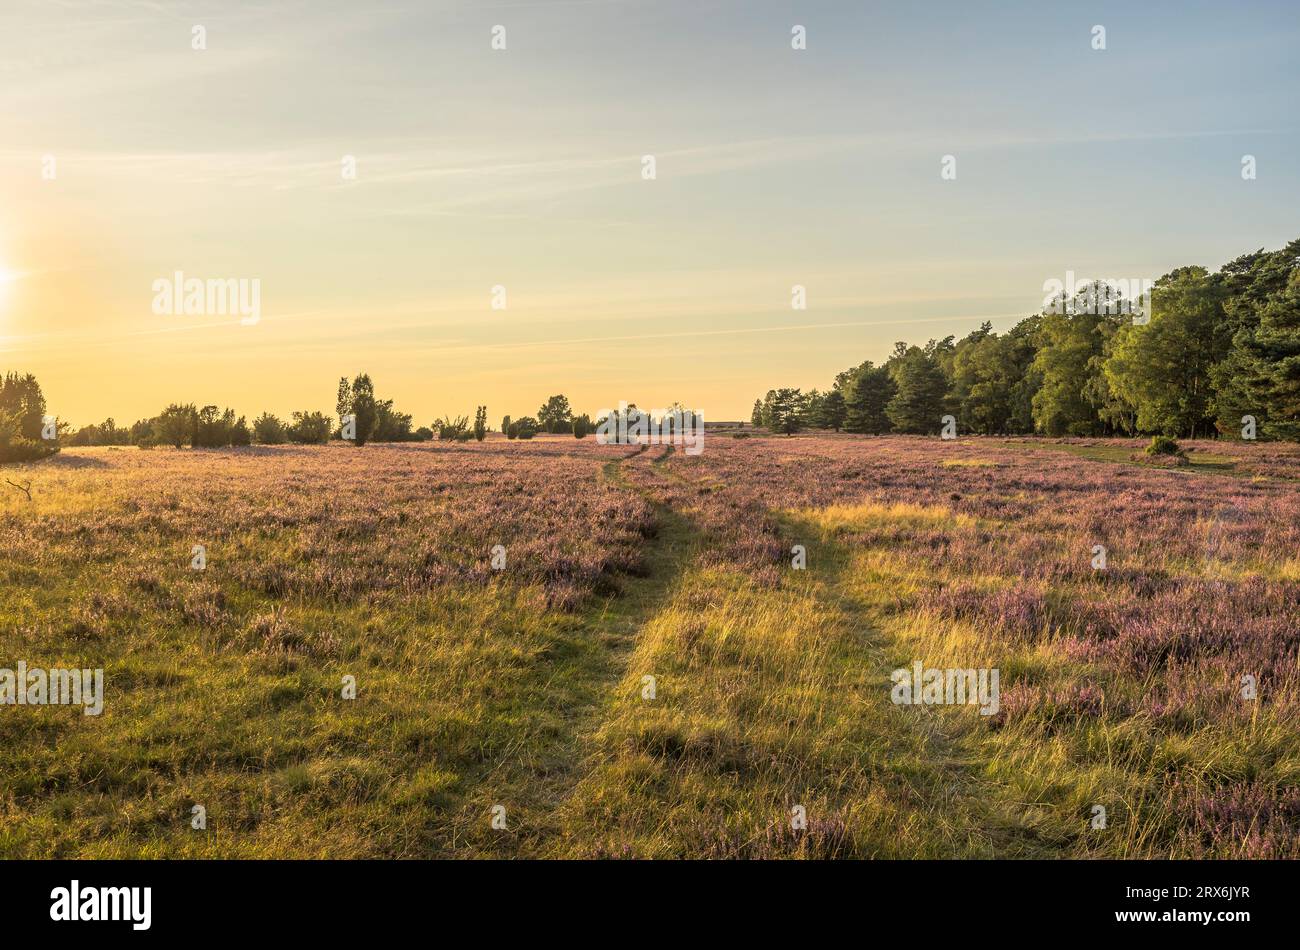 Germany, Lower Saxony, Landscape of Luneburg Heath at dusk Stock Photo